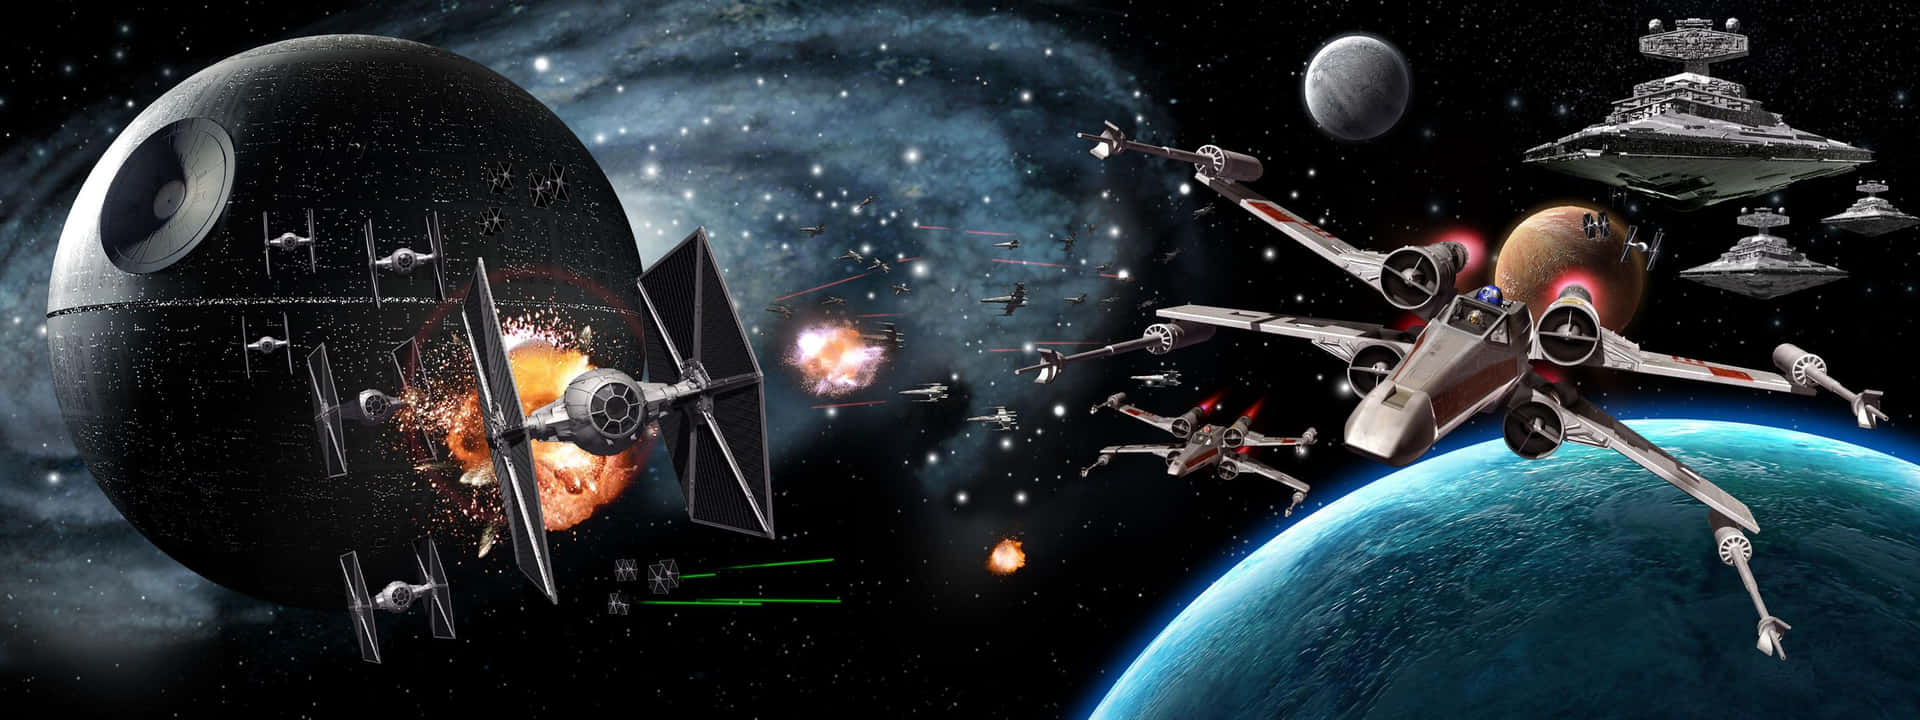 Star Wars Battlefront 2 - Screenshots Wallpaper